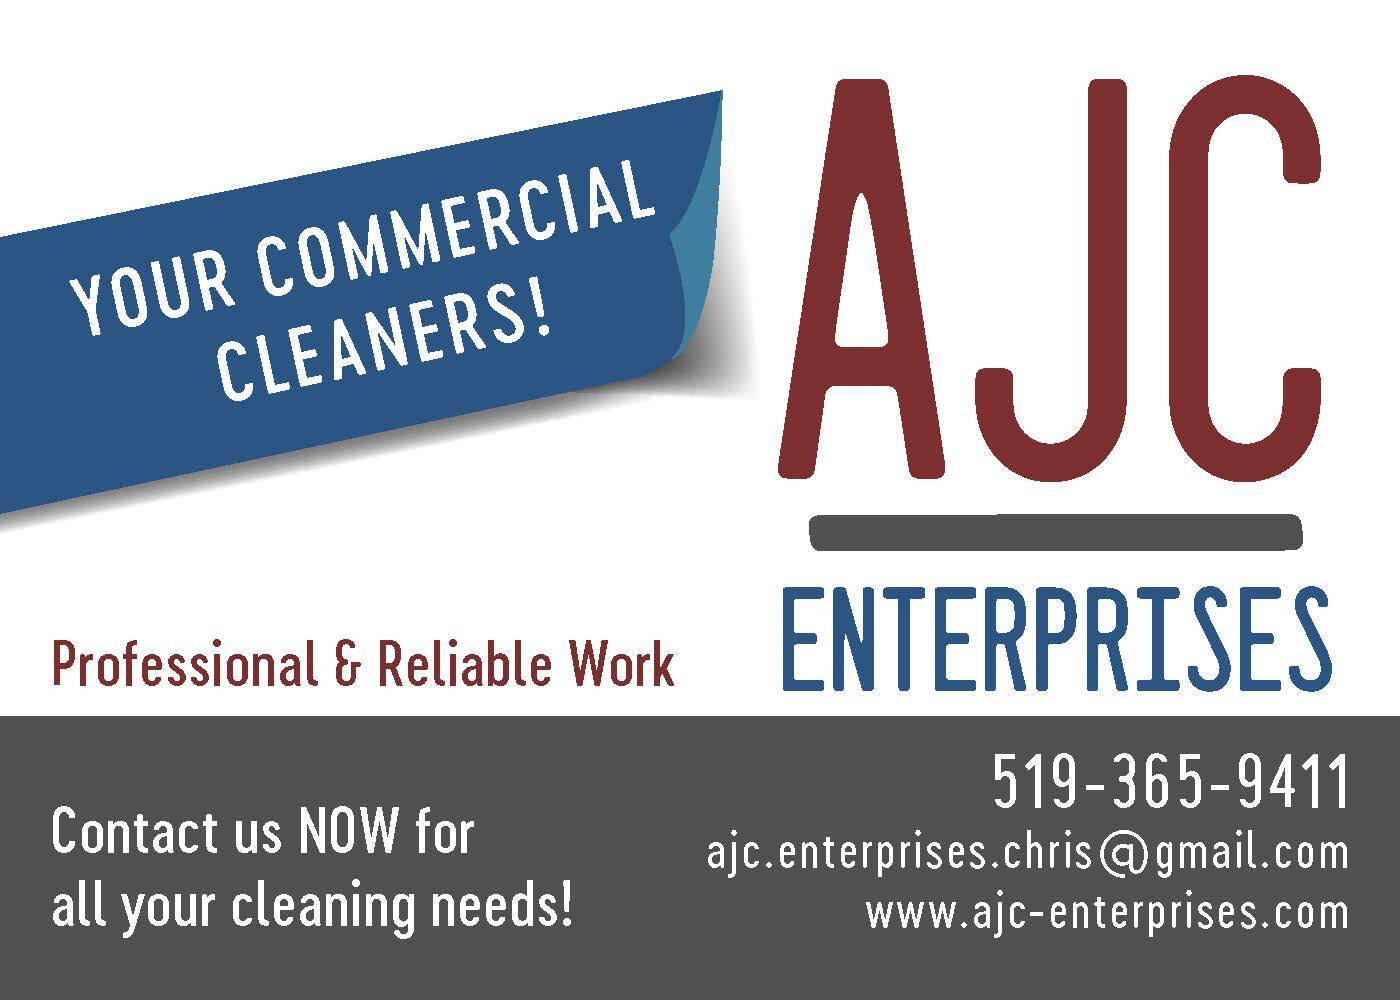 AJC Enterprises